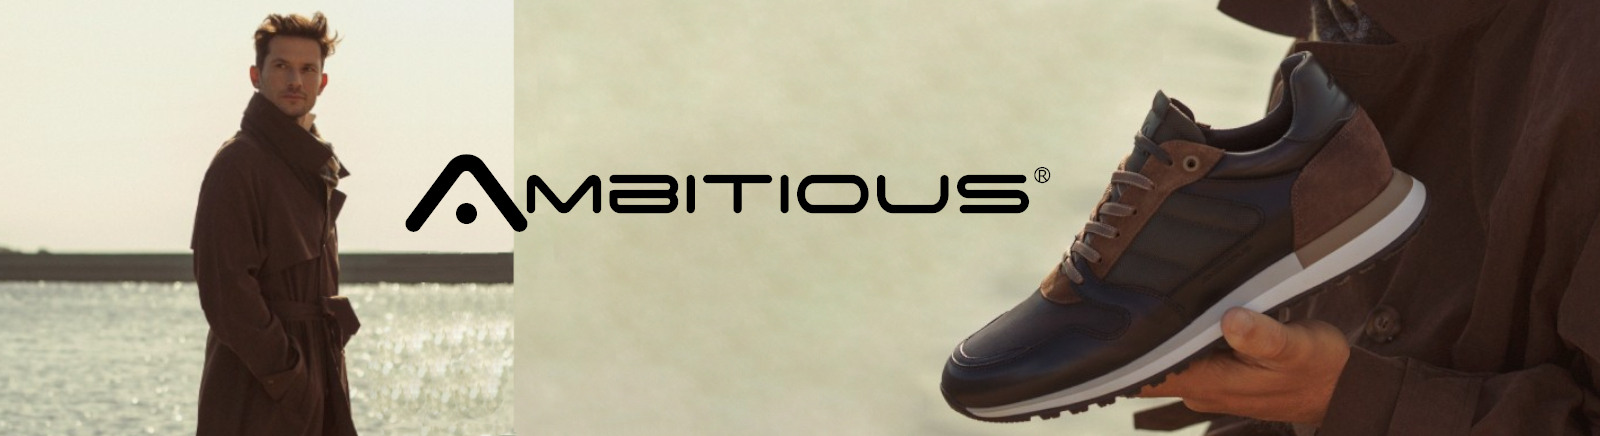 Ambitious Schuhe online entdecken bei GISY Schuhe